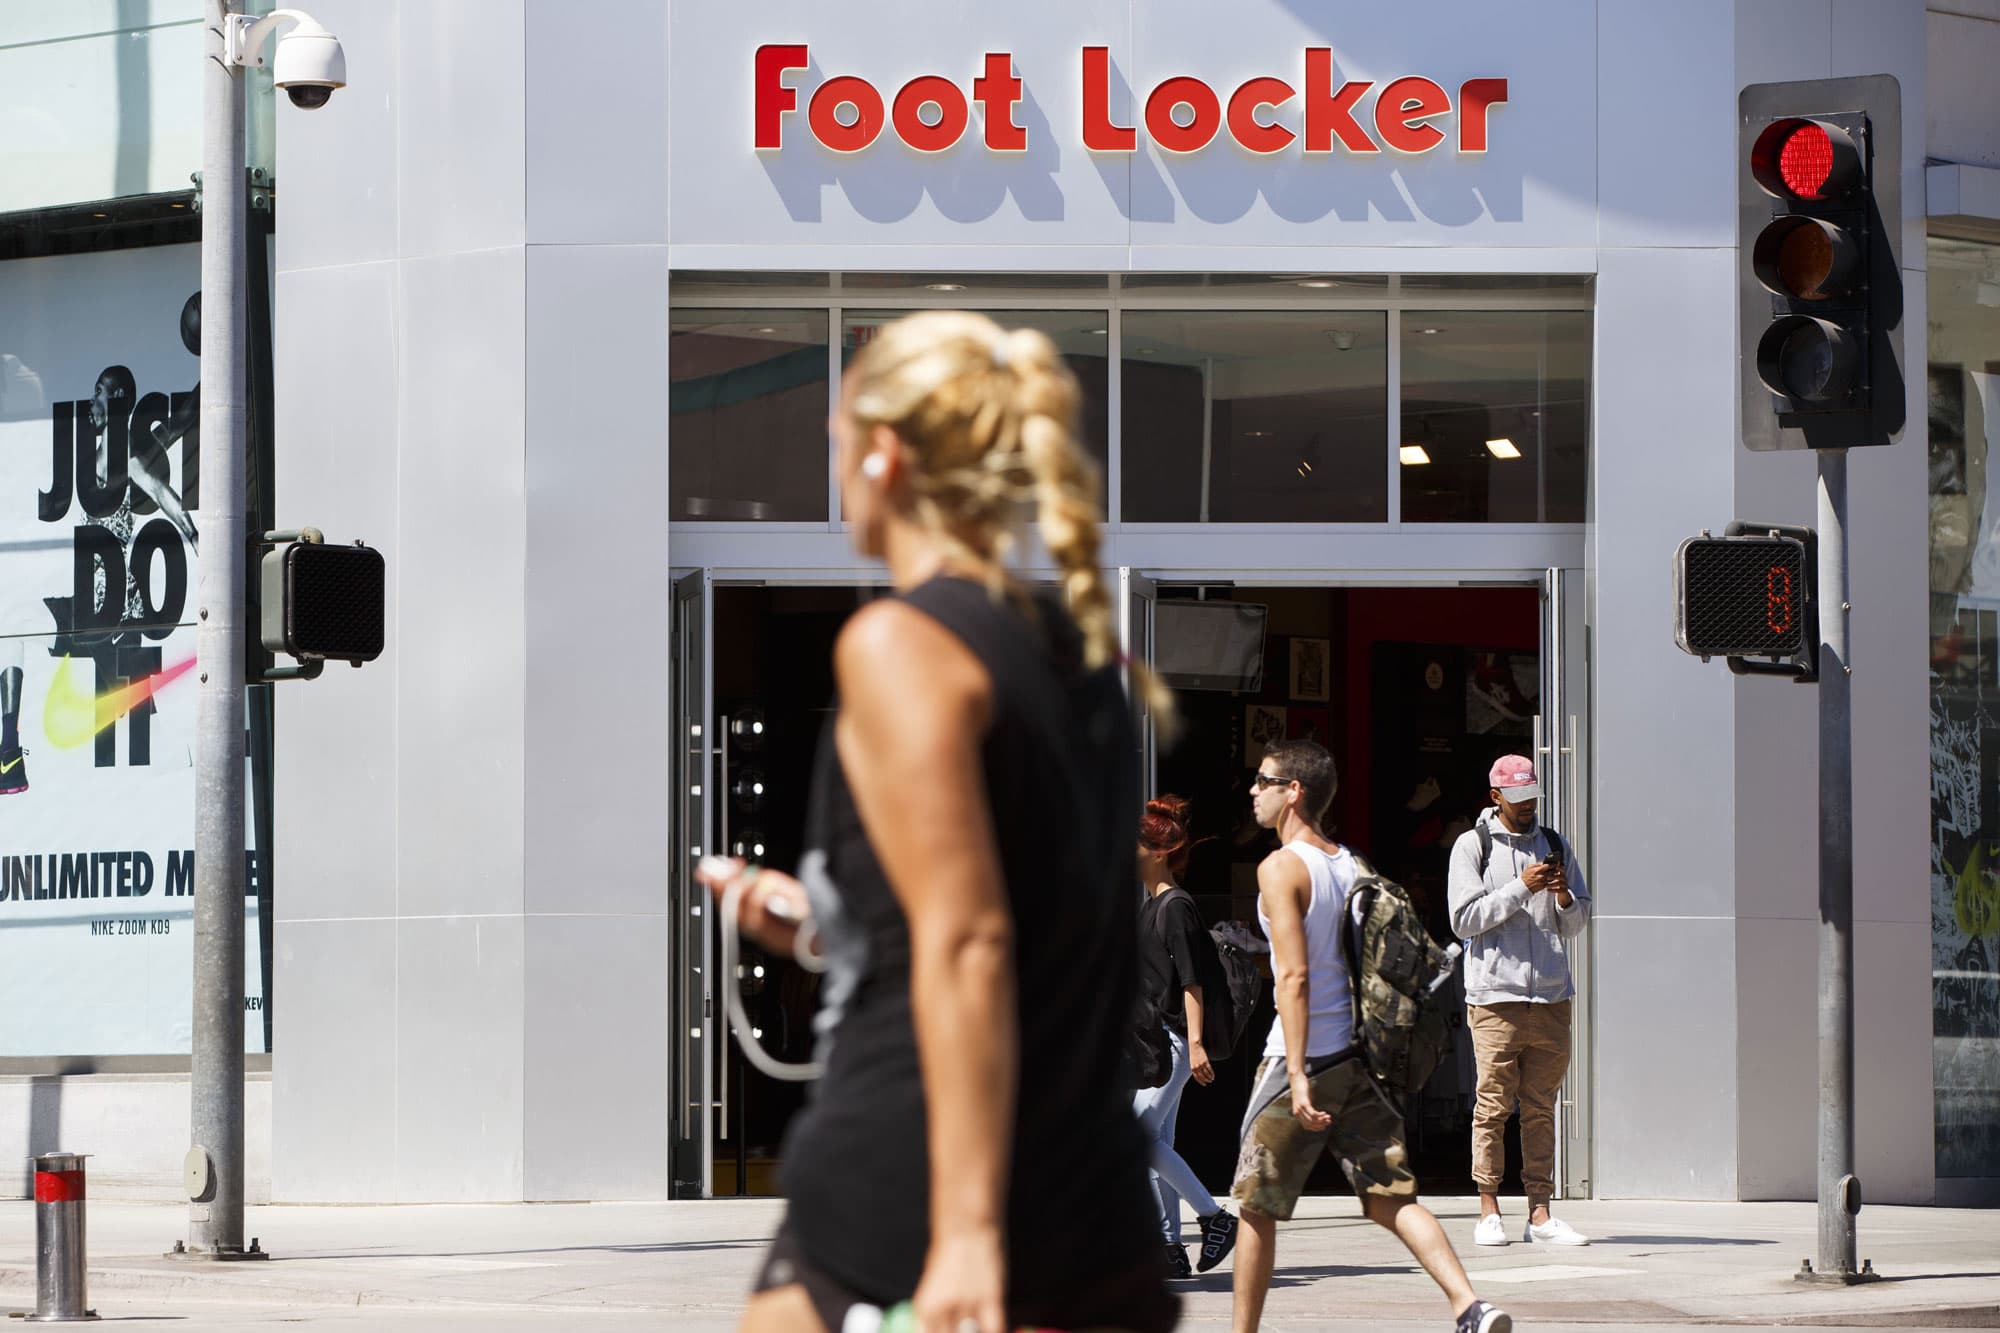 Het nieuwe leiderschap van Foot Locker kan grote winst opleveren voor de retailer, zegt Citi